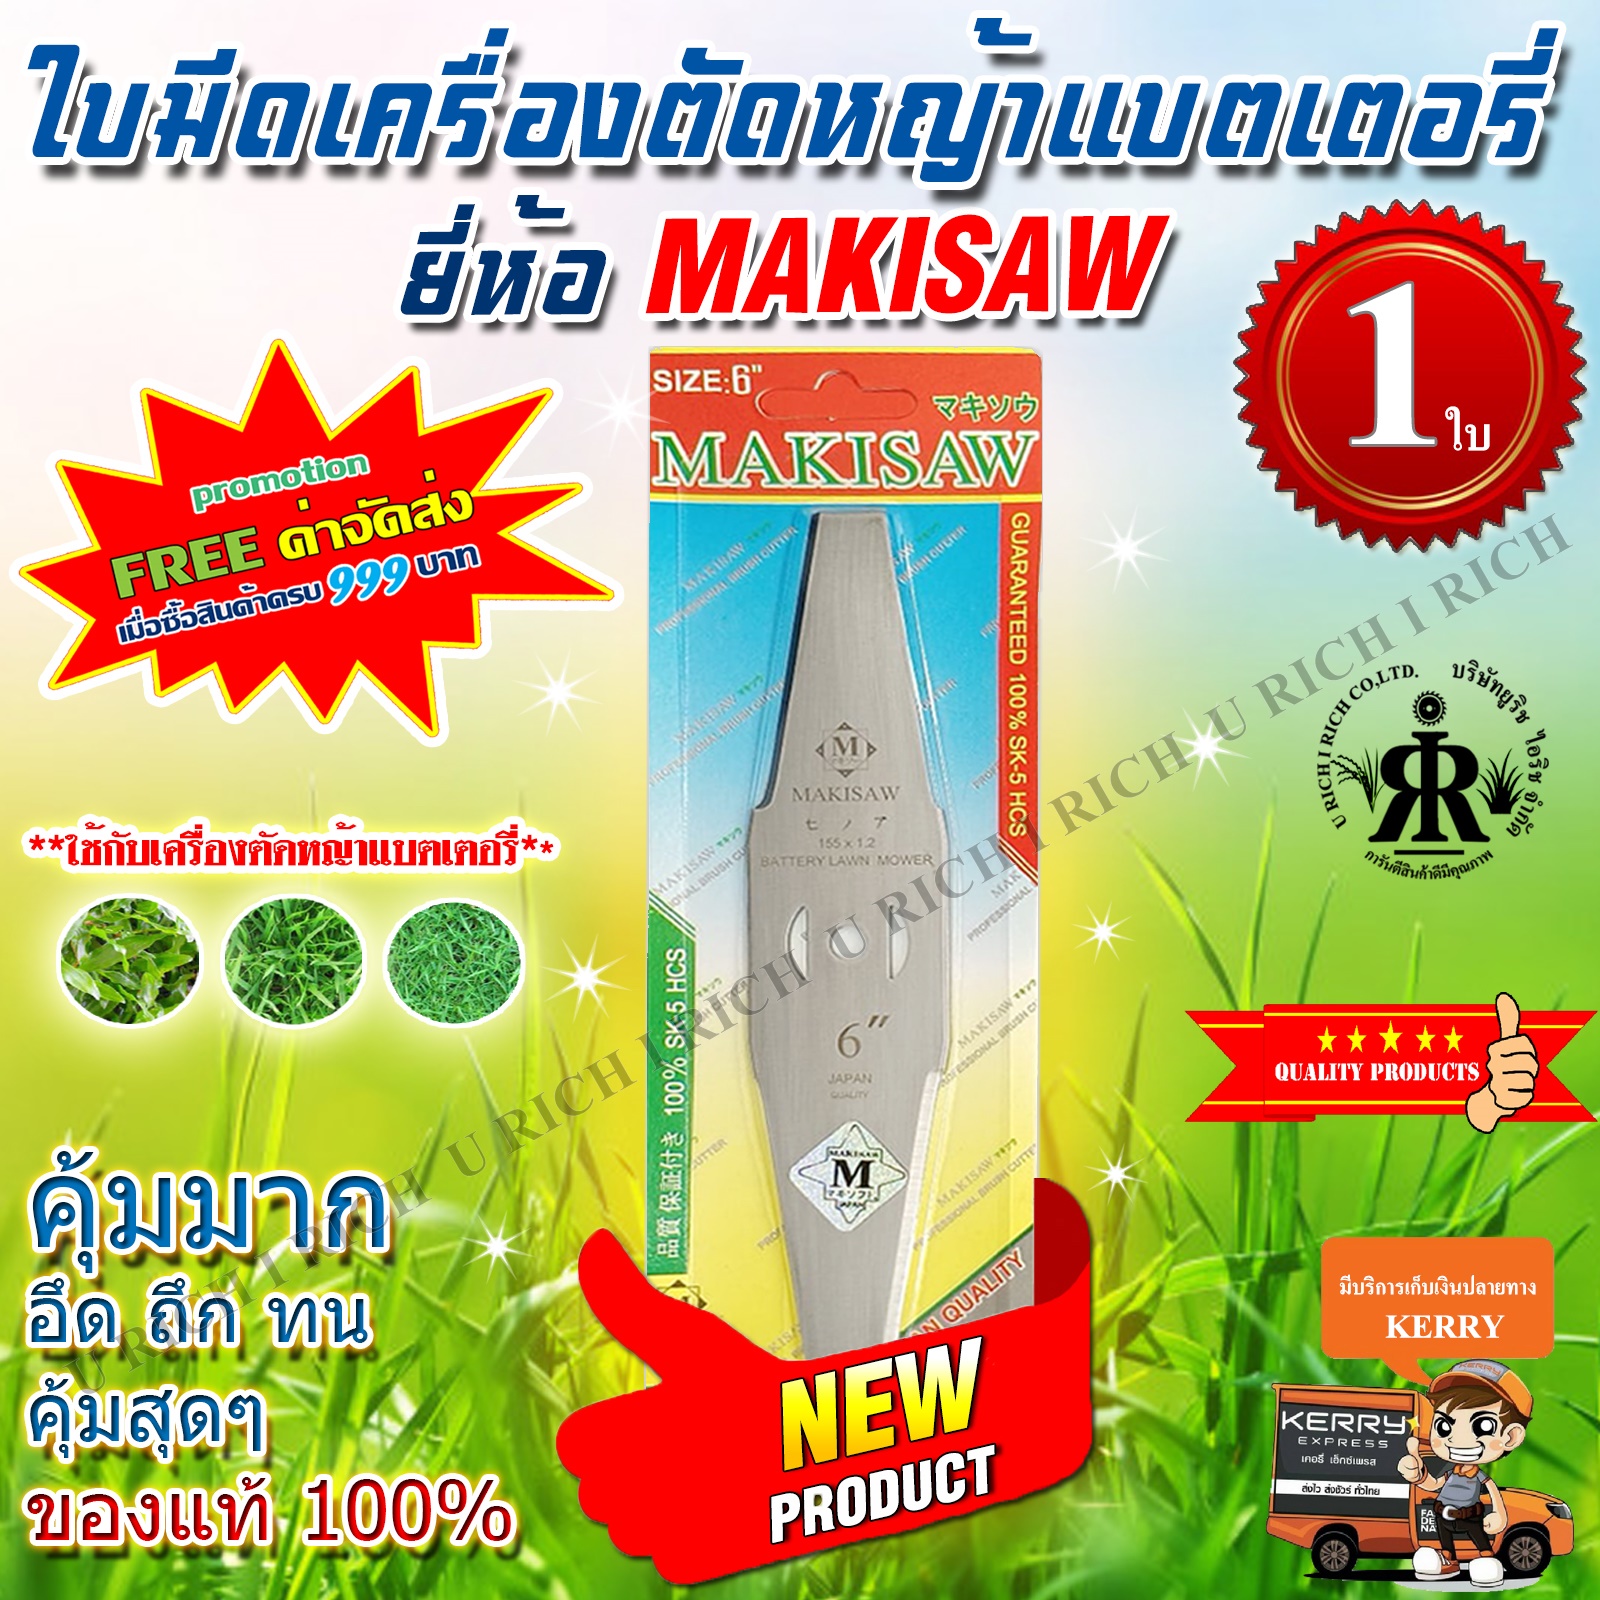 ใบมีดเครื่องตัดหญ้าแบตเตอรี่ (ขนาด 6 นิ้ว) ยี่ห้อ MAKISAW 6